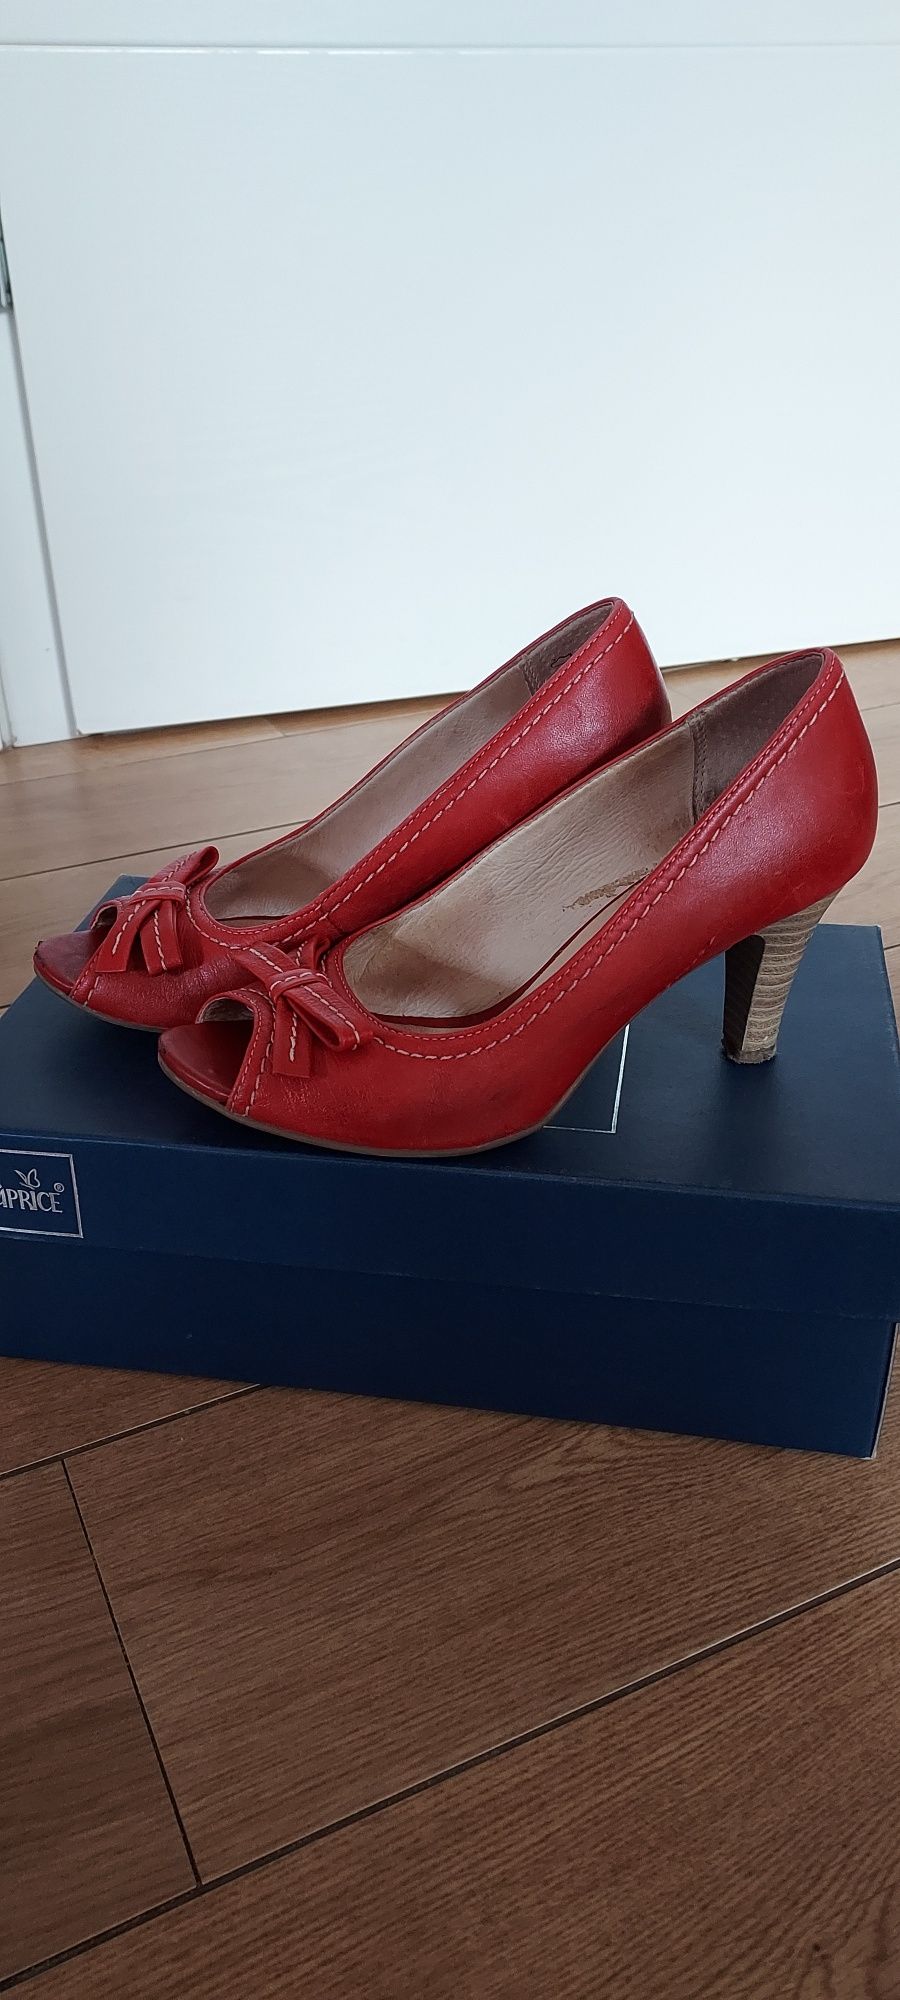 Buty czółenka Caprice r. 37 czerwone skórzane